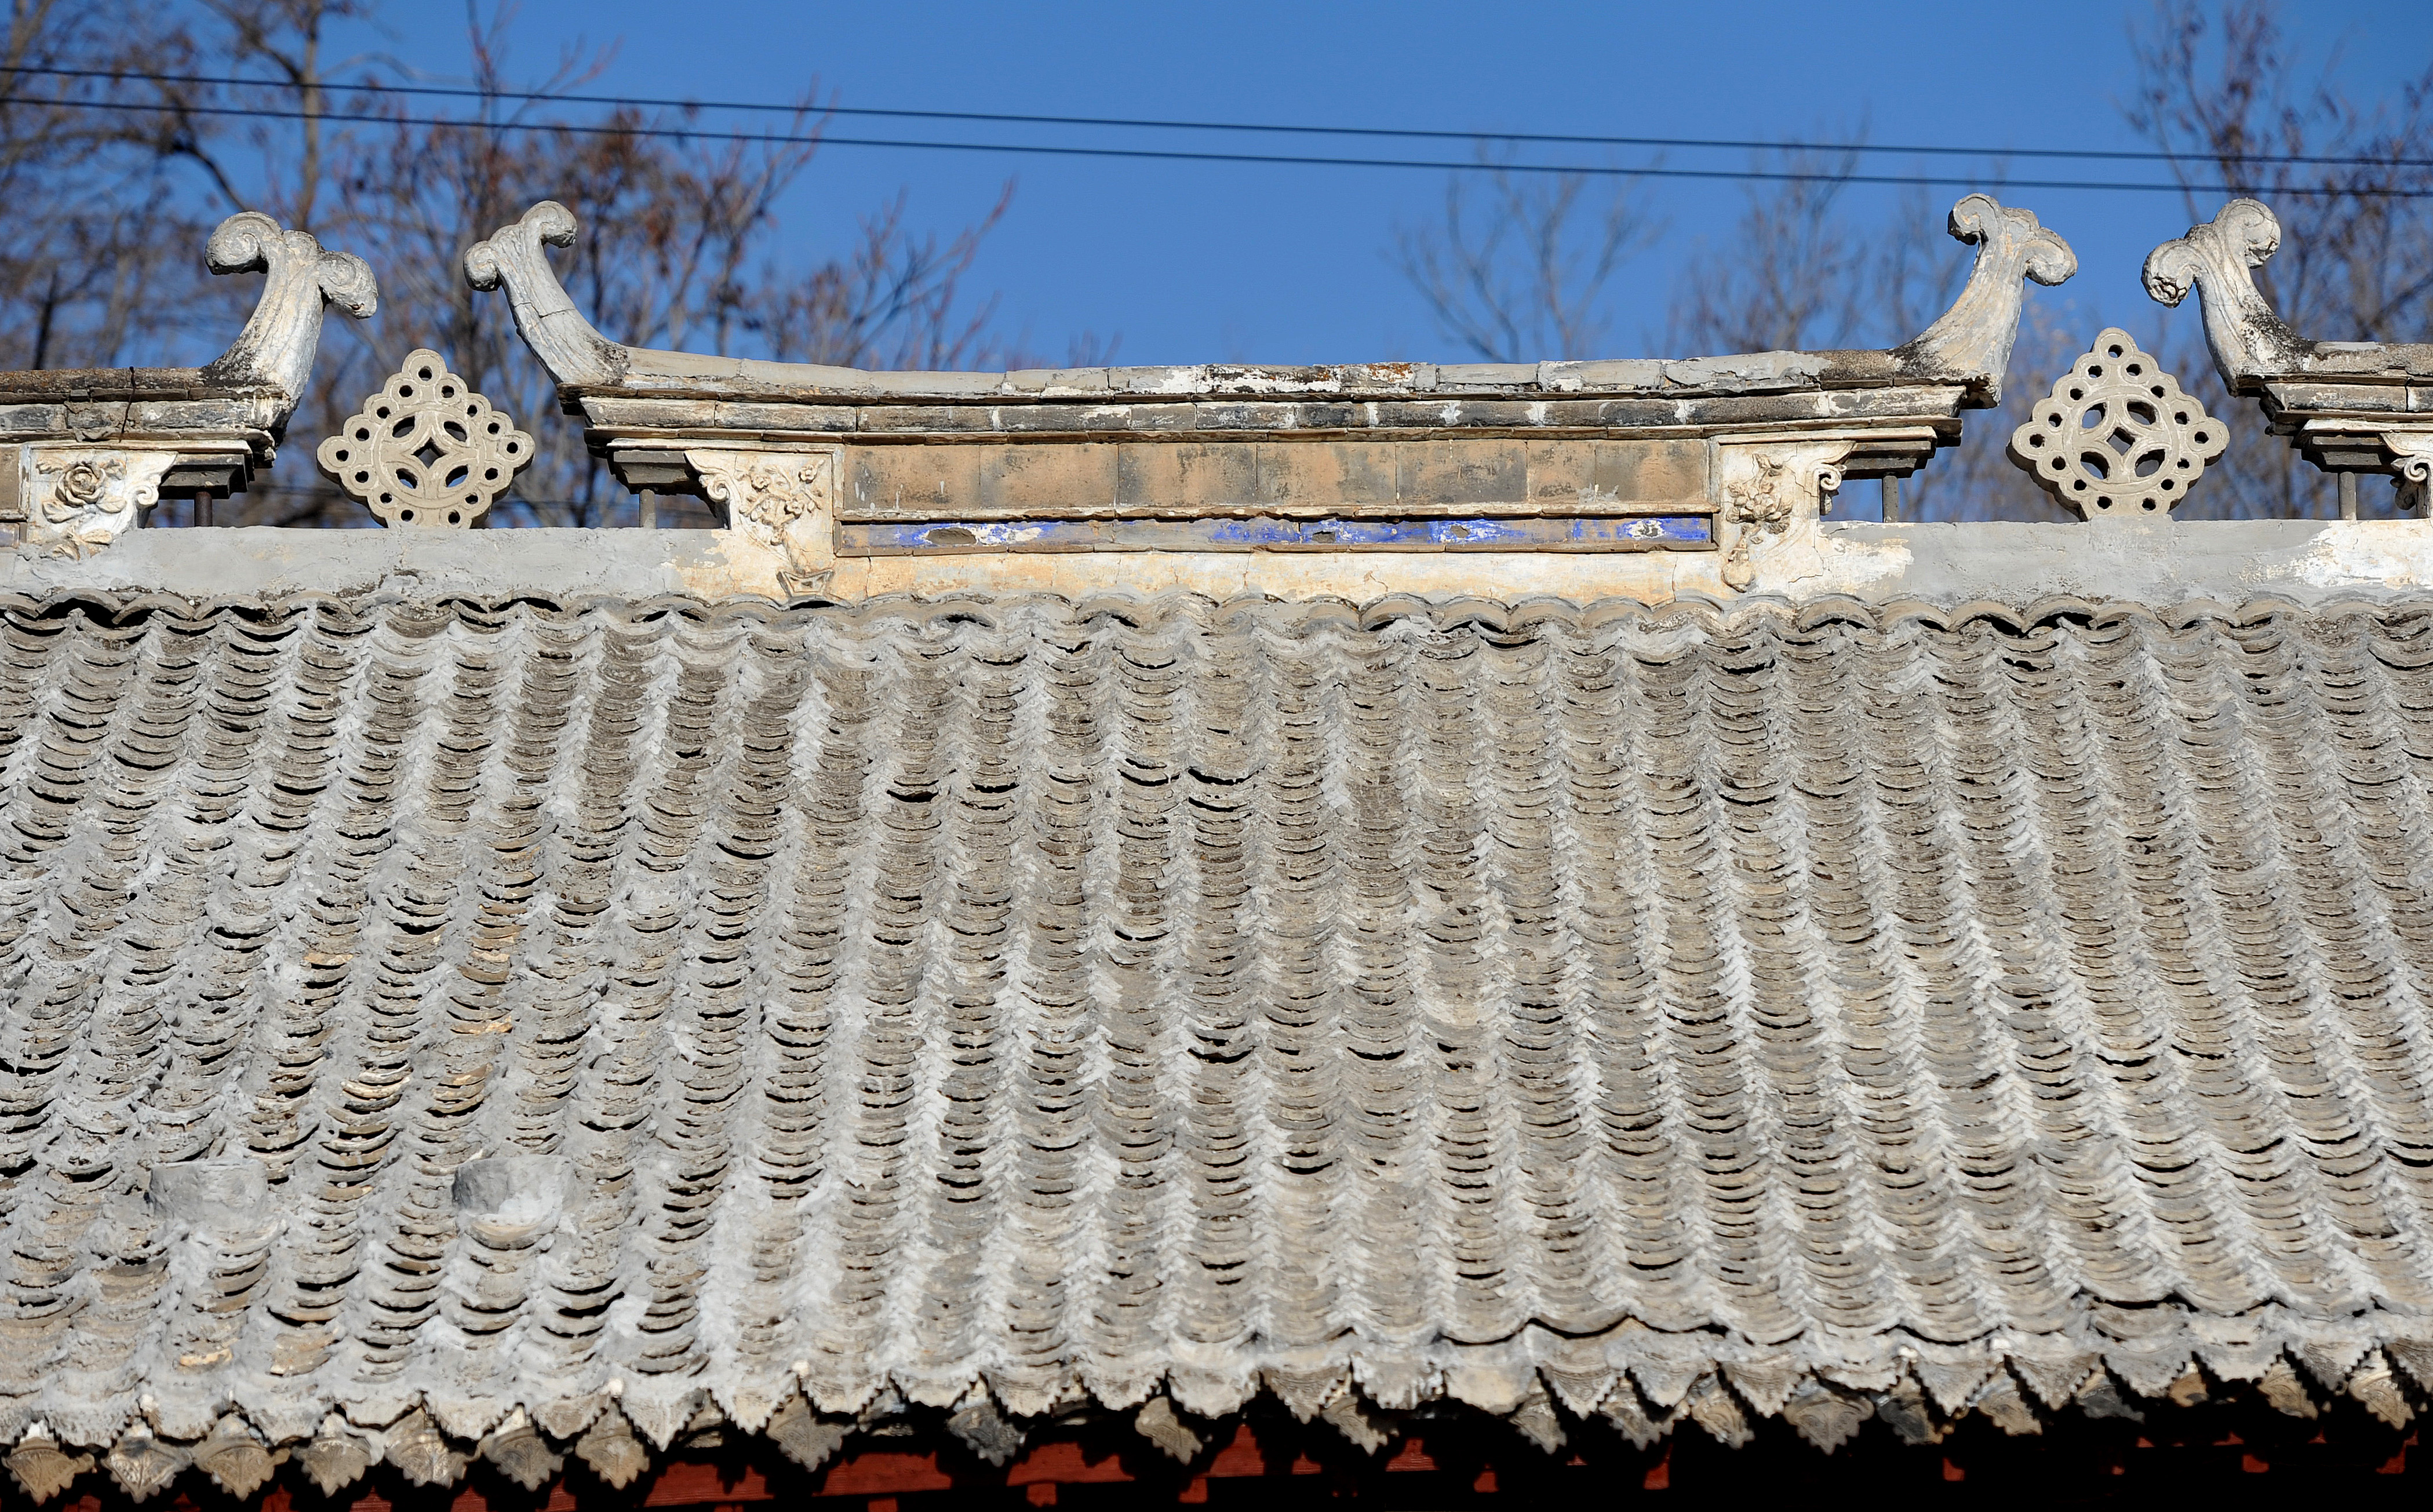 青瓷瓦房的屋顶呈人字形,房盖有鱼鳞青瓦,飞檐中间,两对螭吻相对,中间